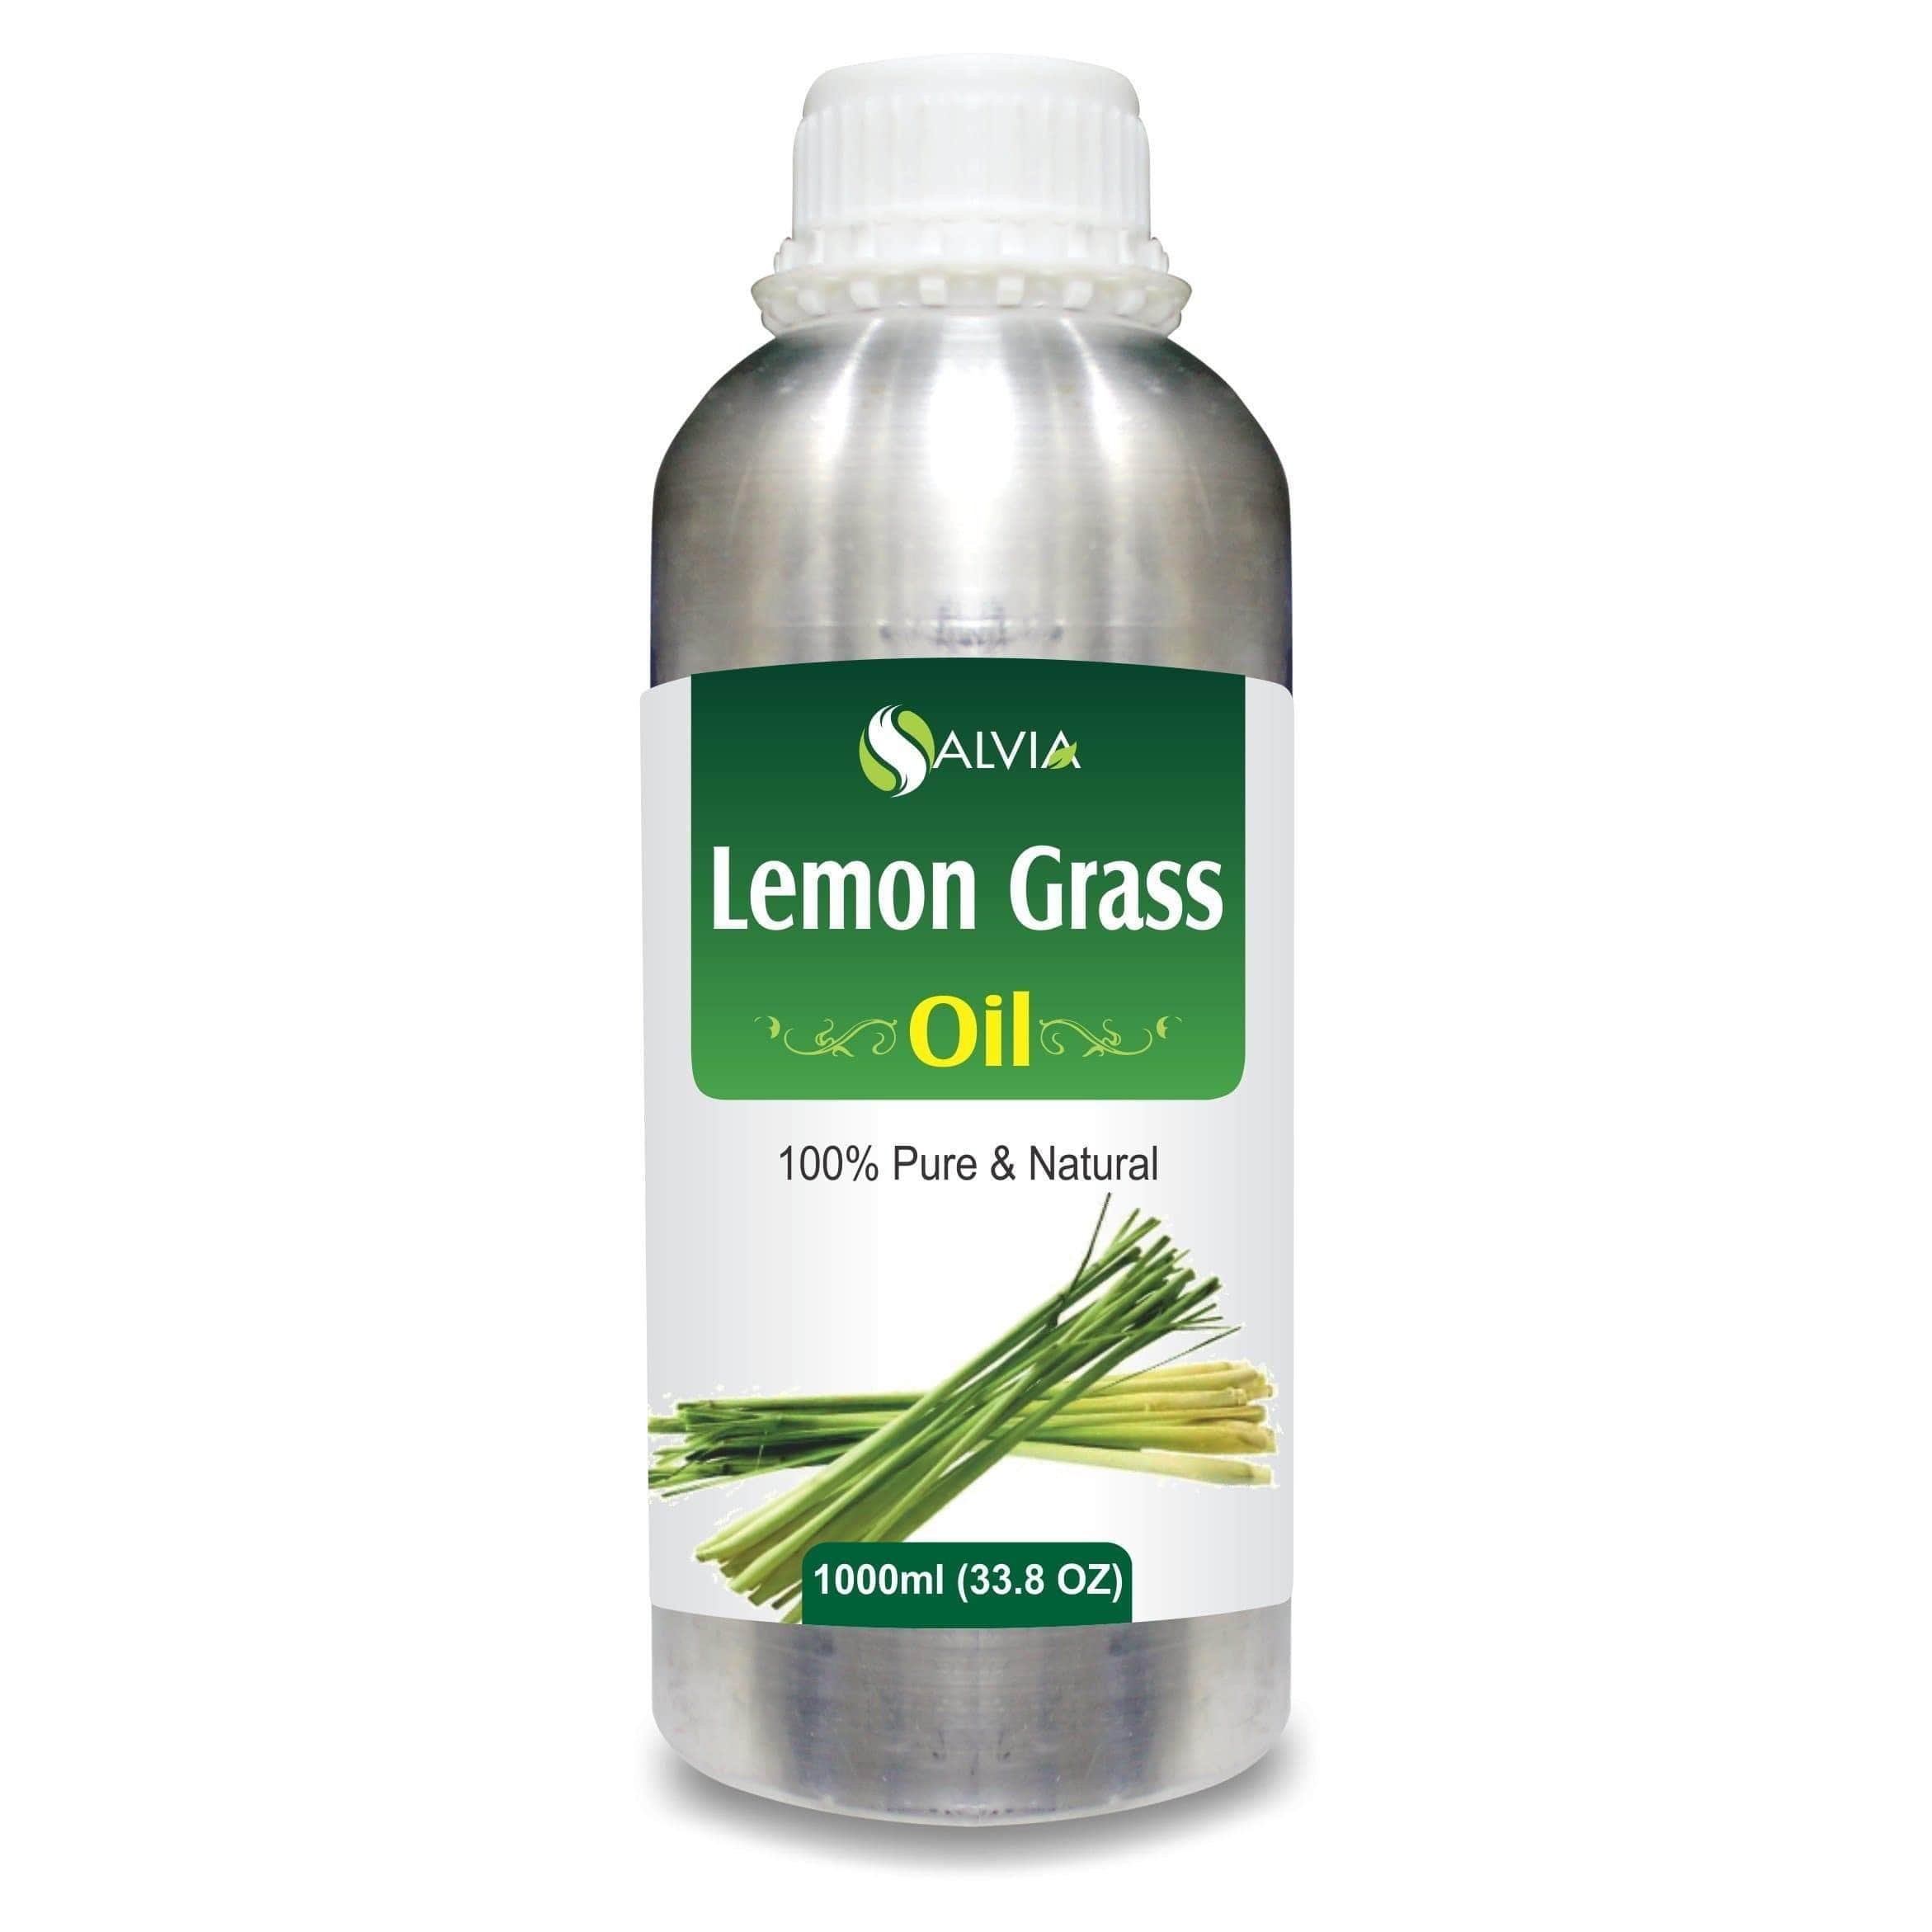 lemon grass benefits for hair